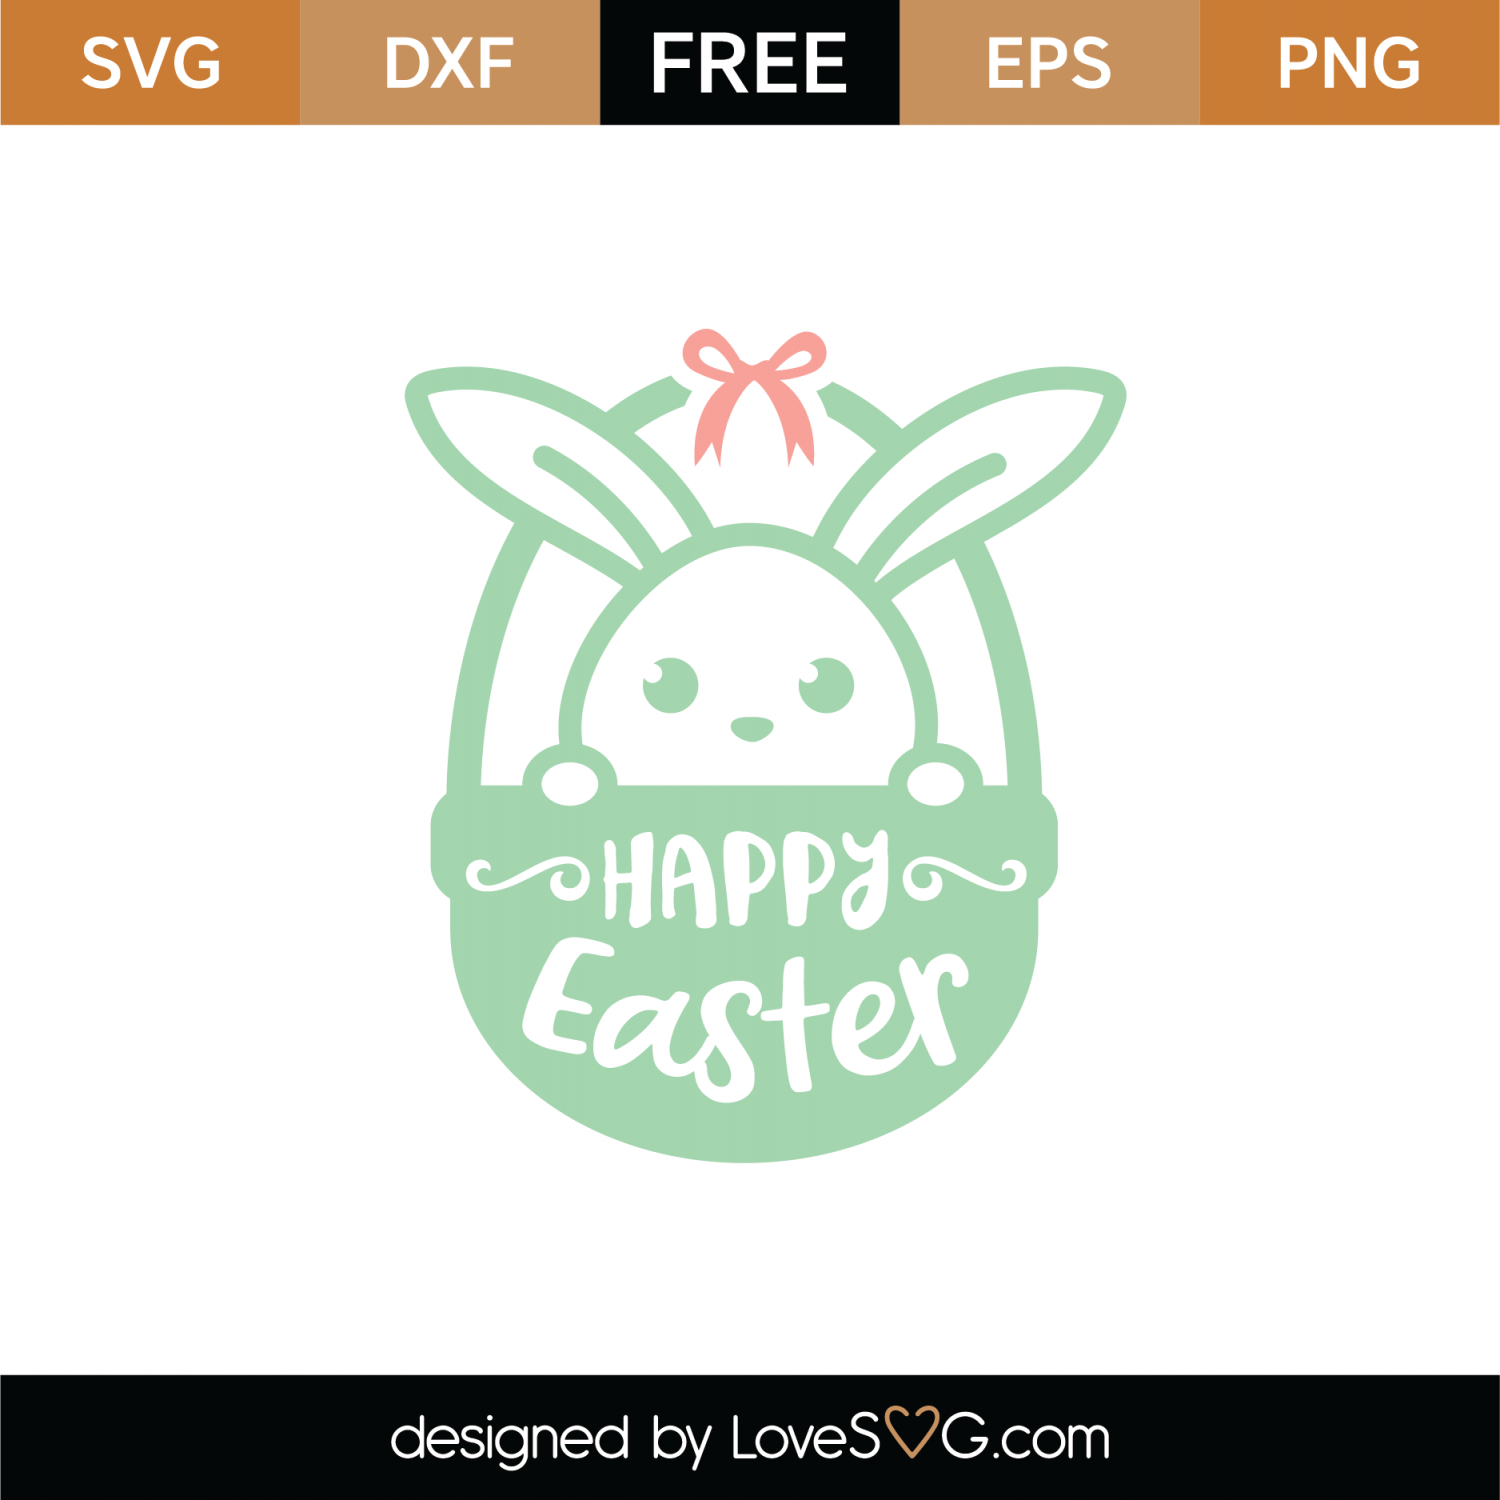 Download Free Happy Easter Basket SVG Cut File | Lovesvg.com